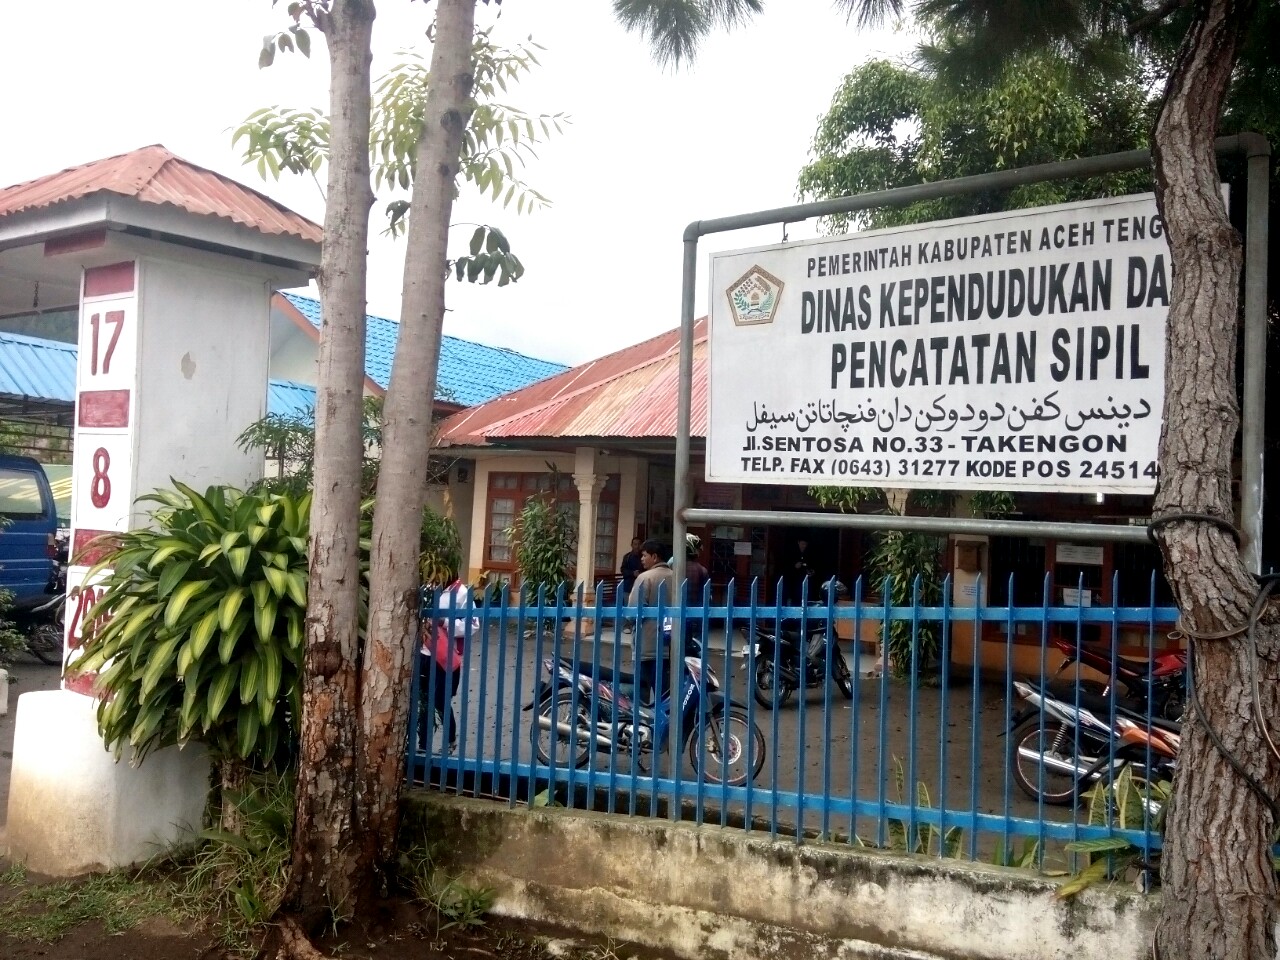 Gambar Dinas Kependudukan Dan Pencatatan Sipil Kabupaten Aceh Tengah